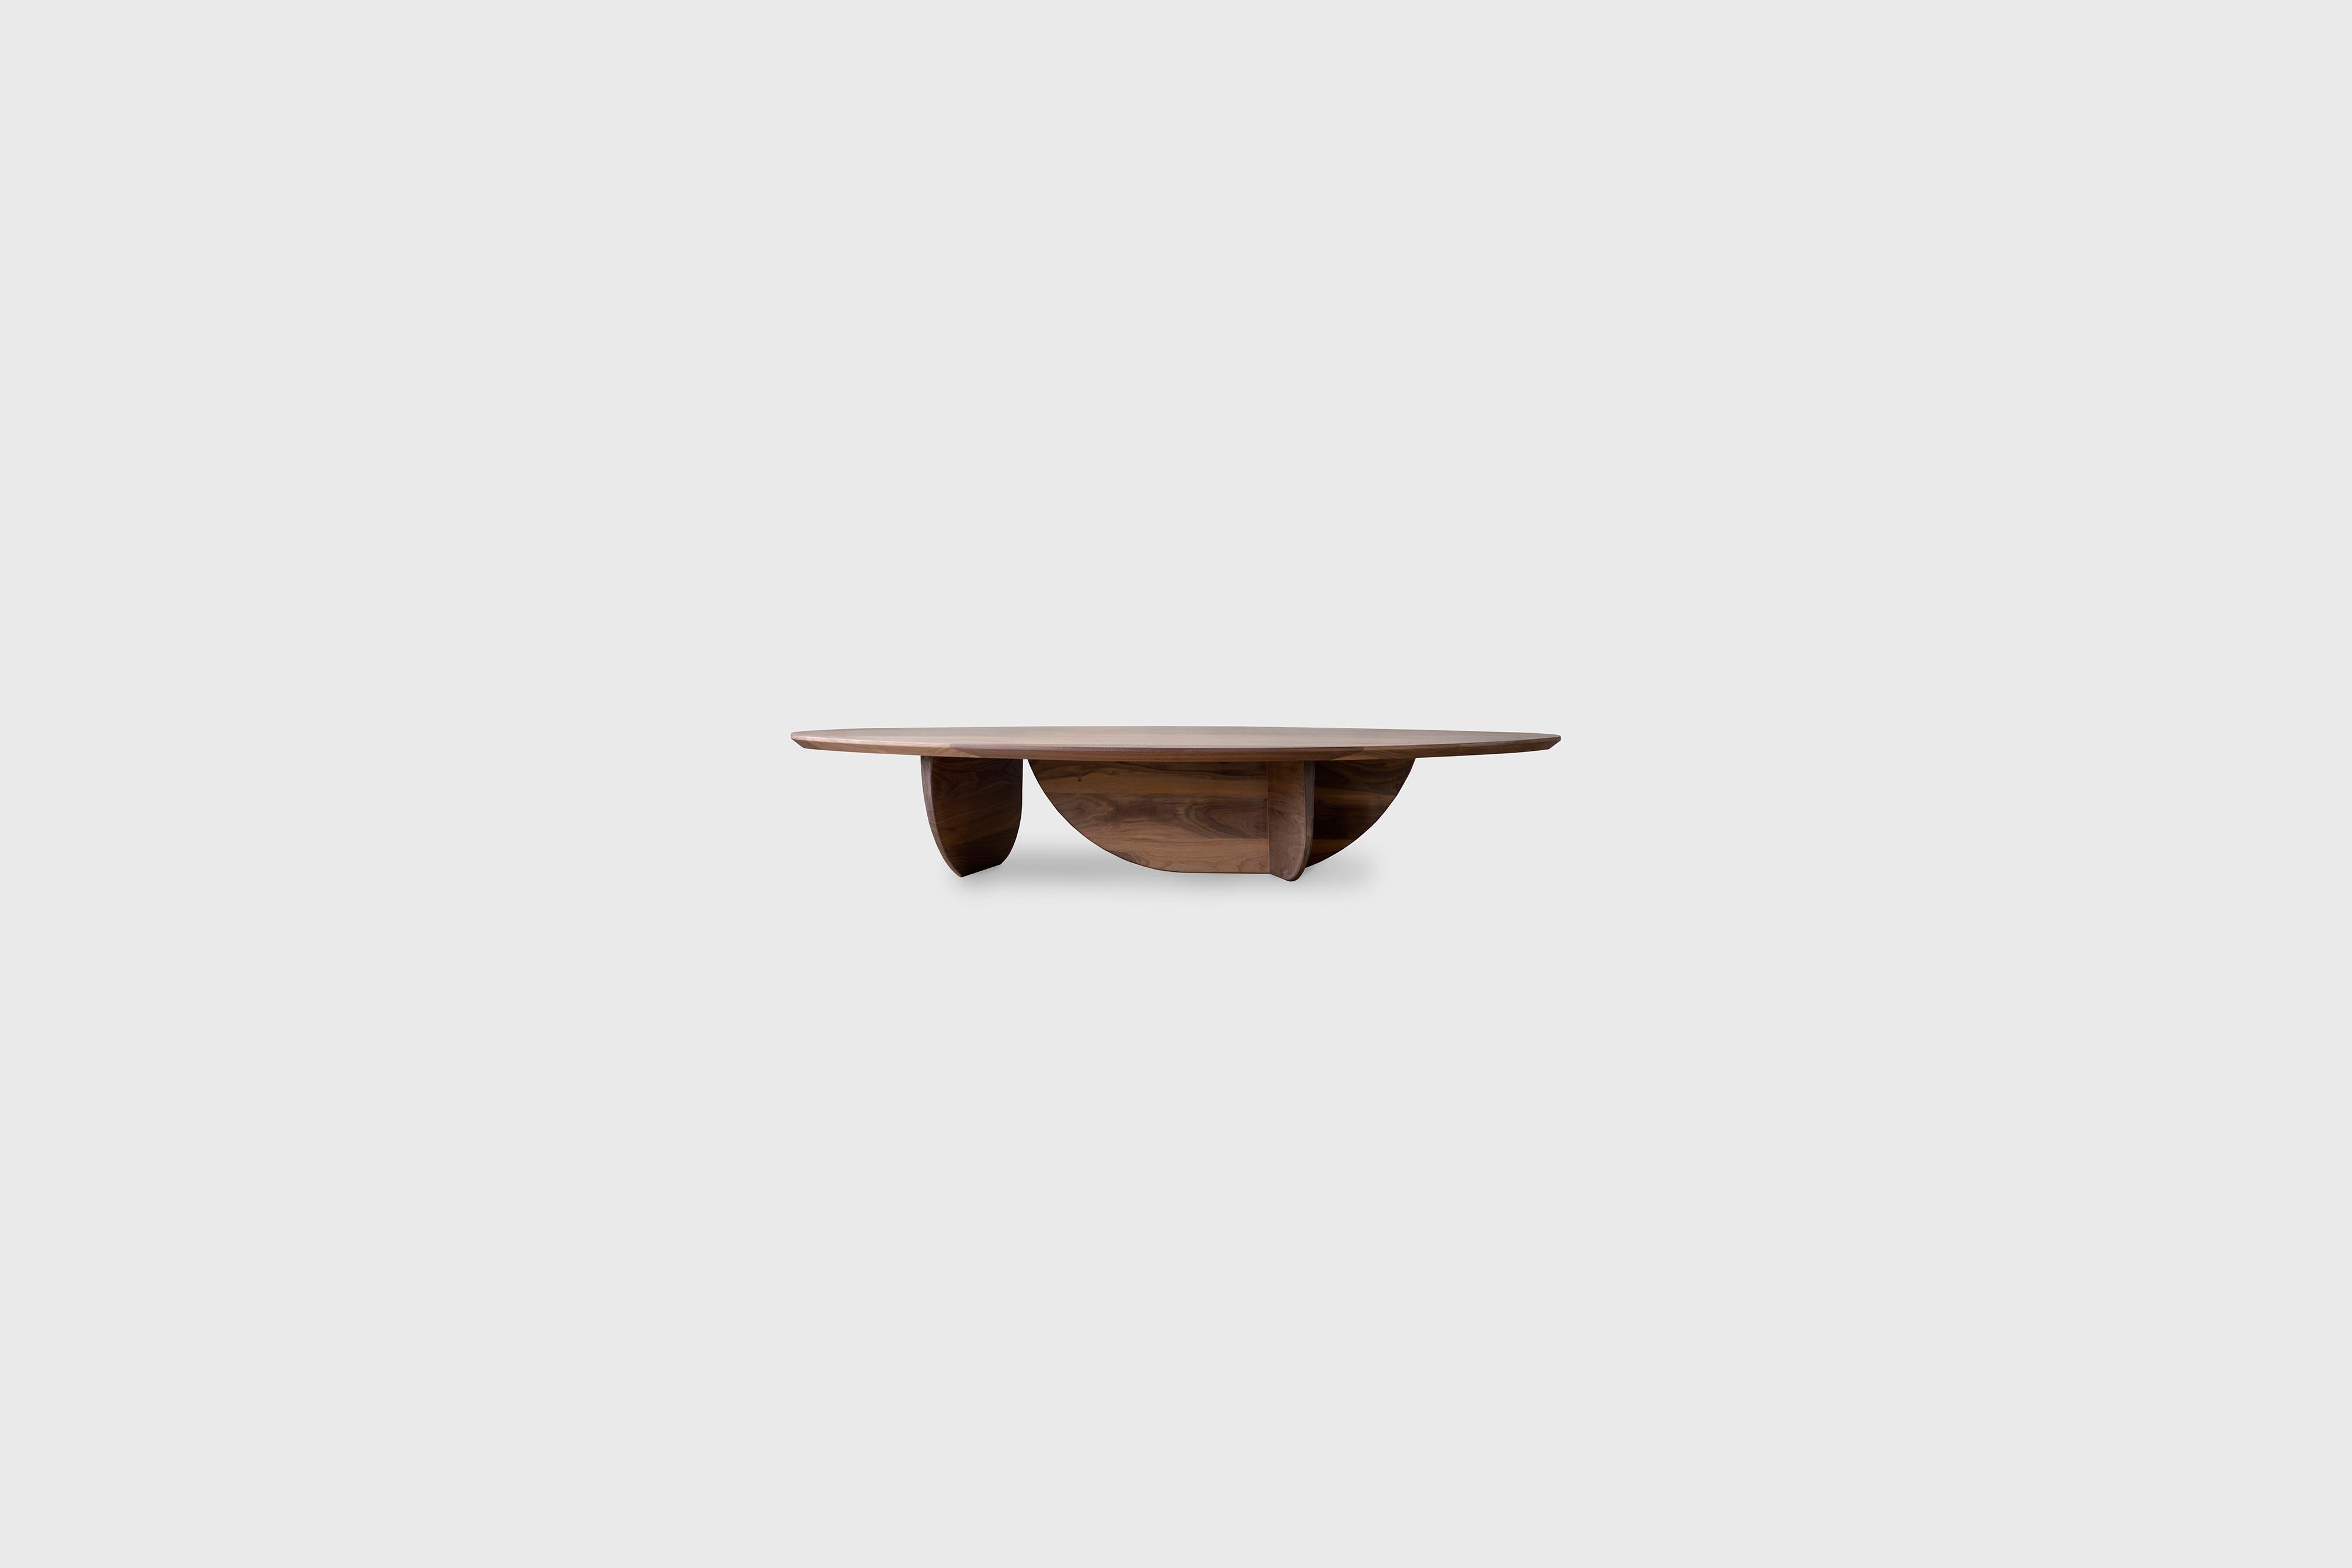 Table basse Pebble II par Atra Design
Dimensions : P 174 x L 77,7 x H 32,2 cm
Matériaux : Bois de noyer.
Disponible également dans d'autres bois : chêne huilé blanc, teck et chêne anthracite. 

Atra Design
Nous sommes Atra, une marque de meubles